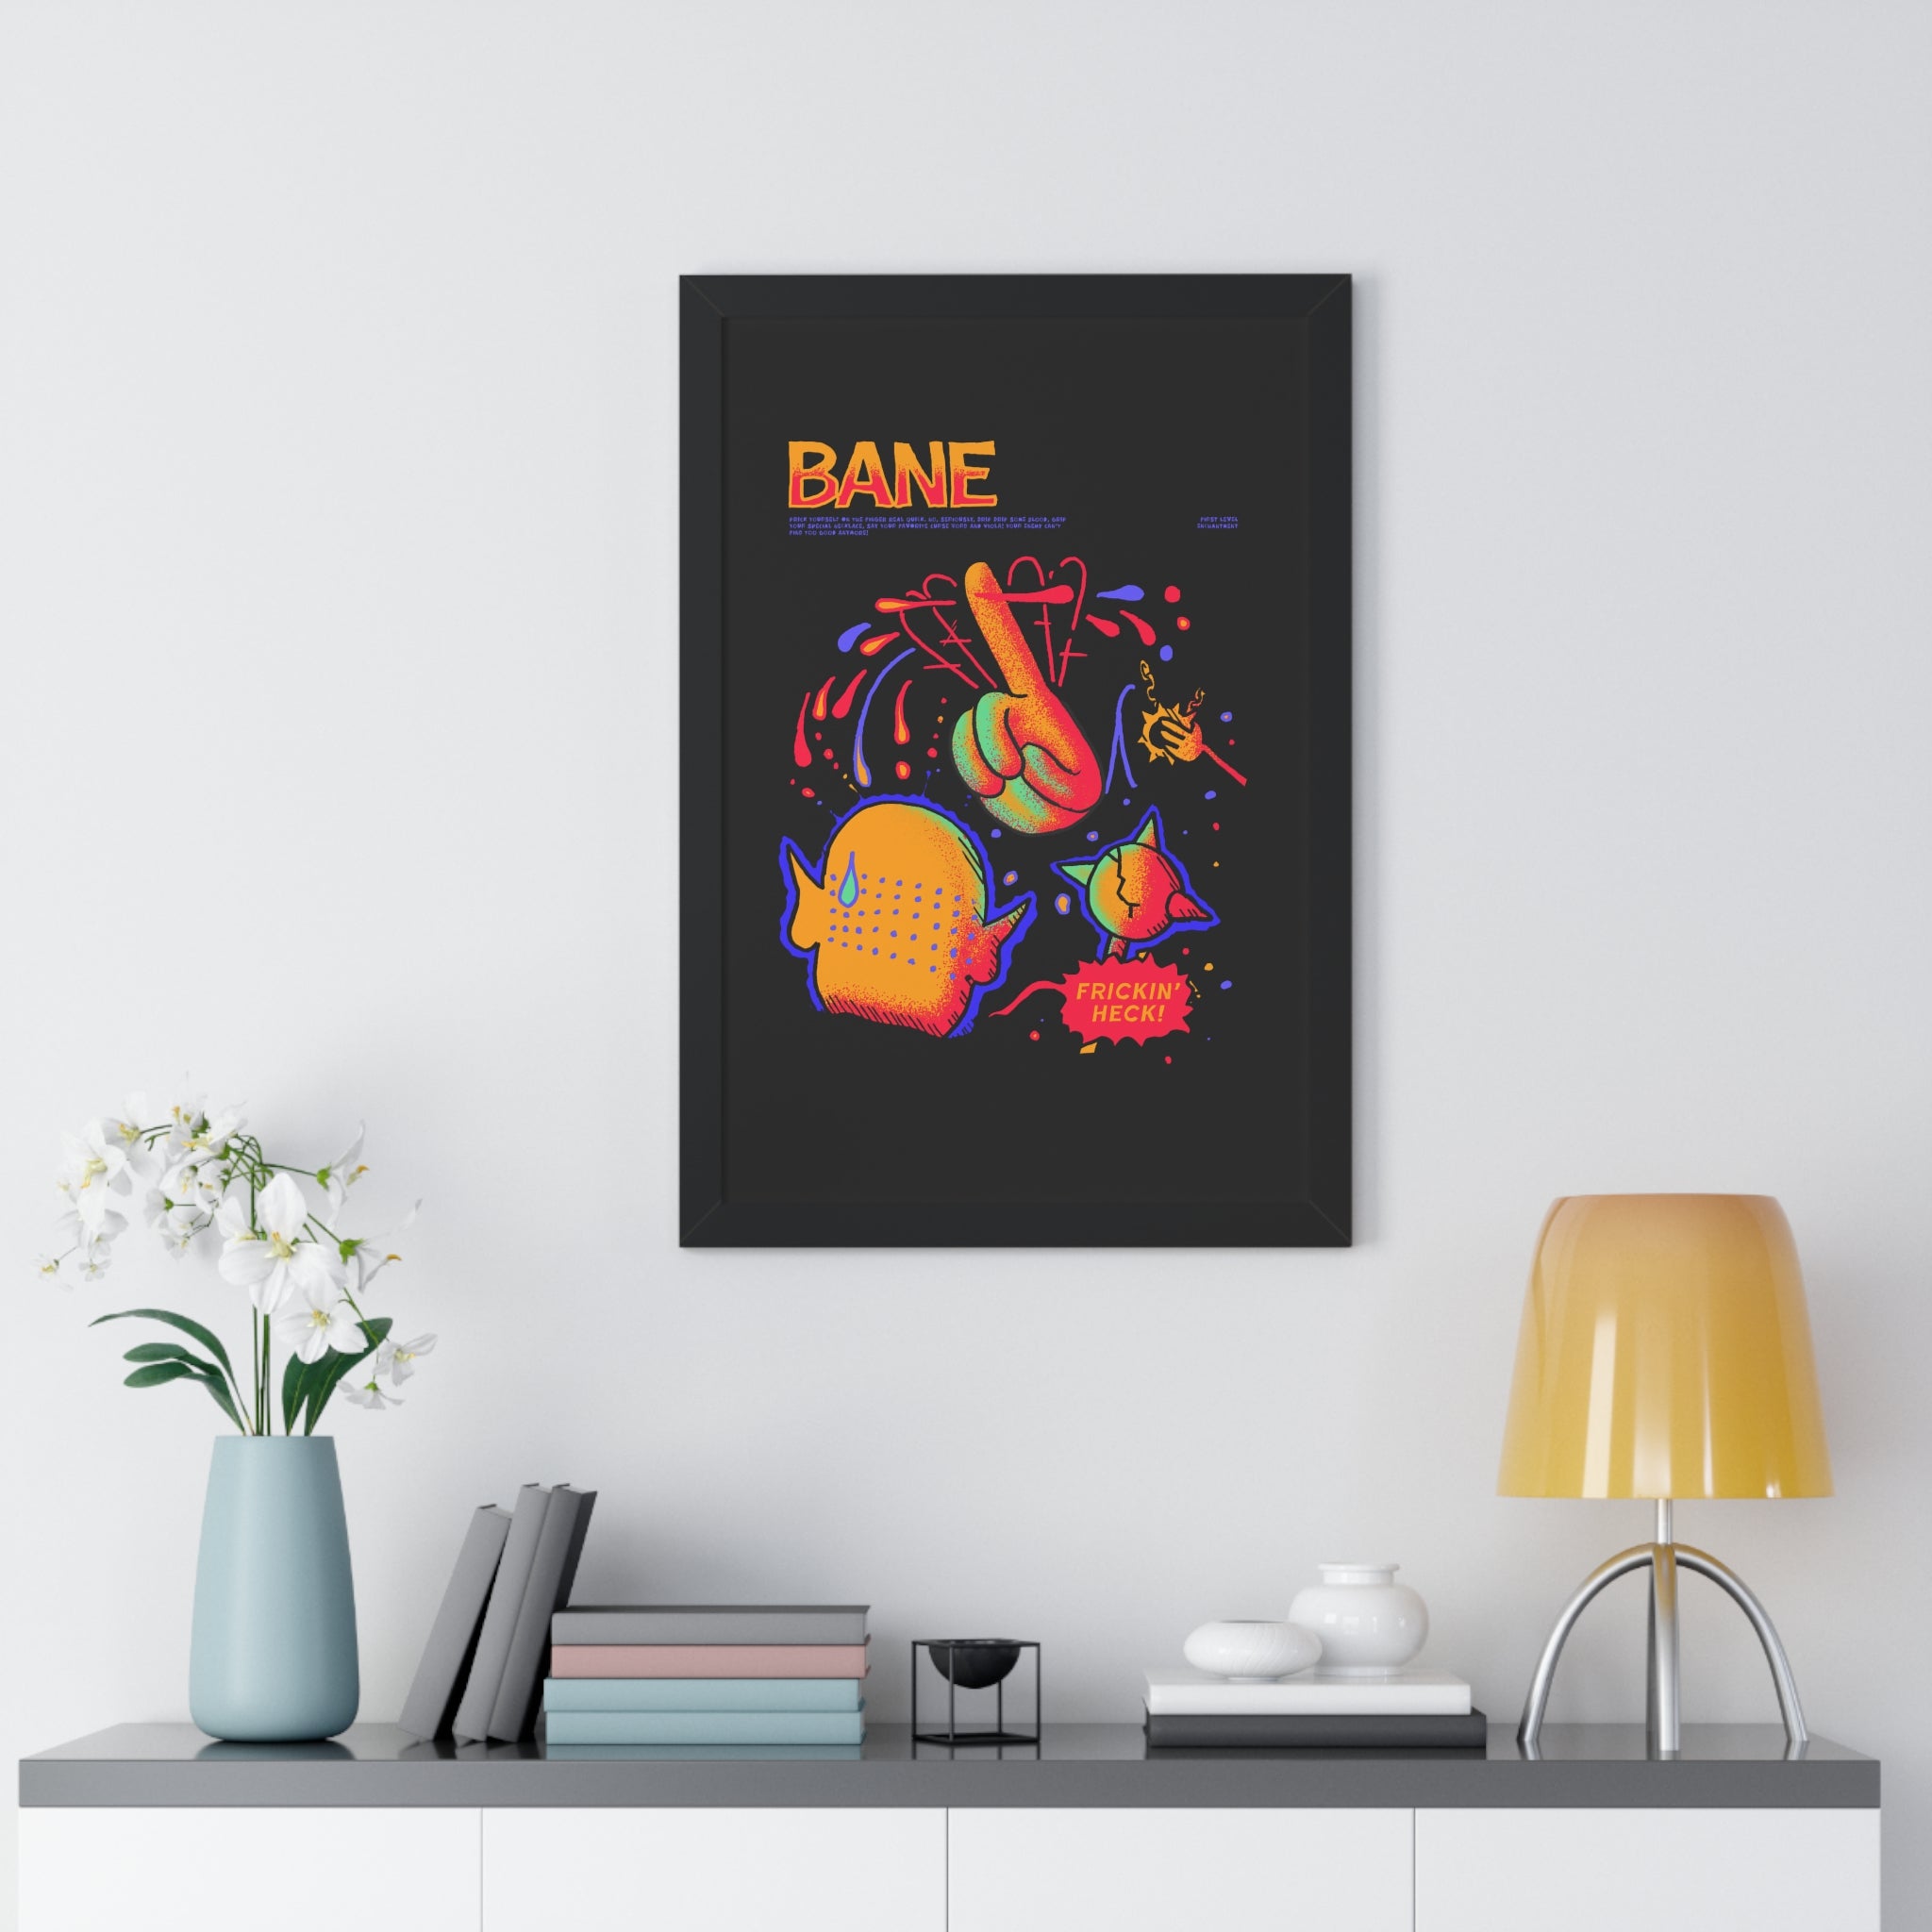 Bane | Framed Poster - Framed Poster - Ace of Gnomes - 15035227594800091940